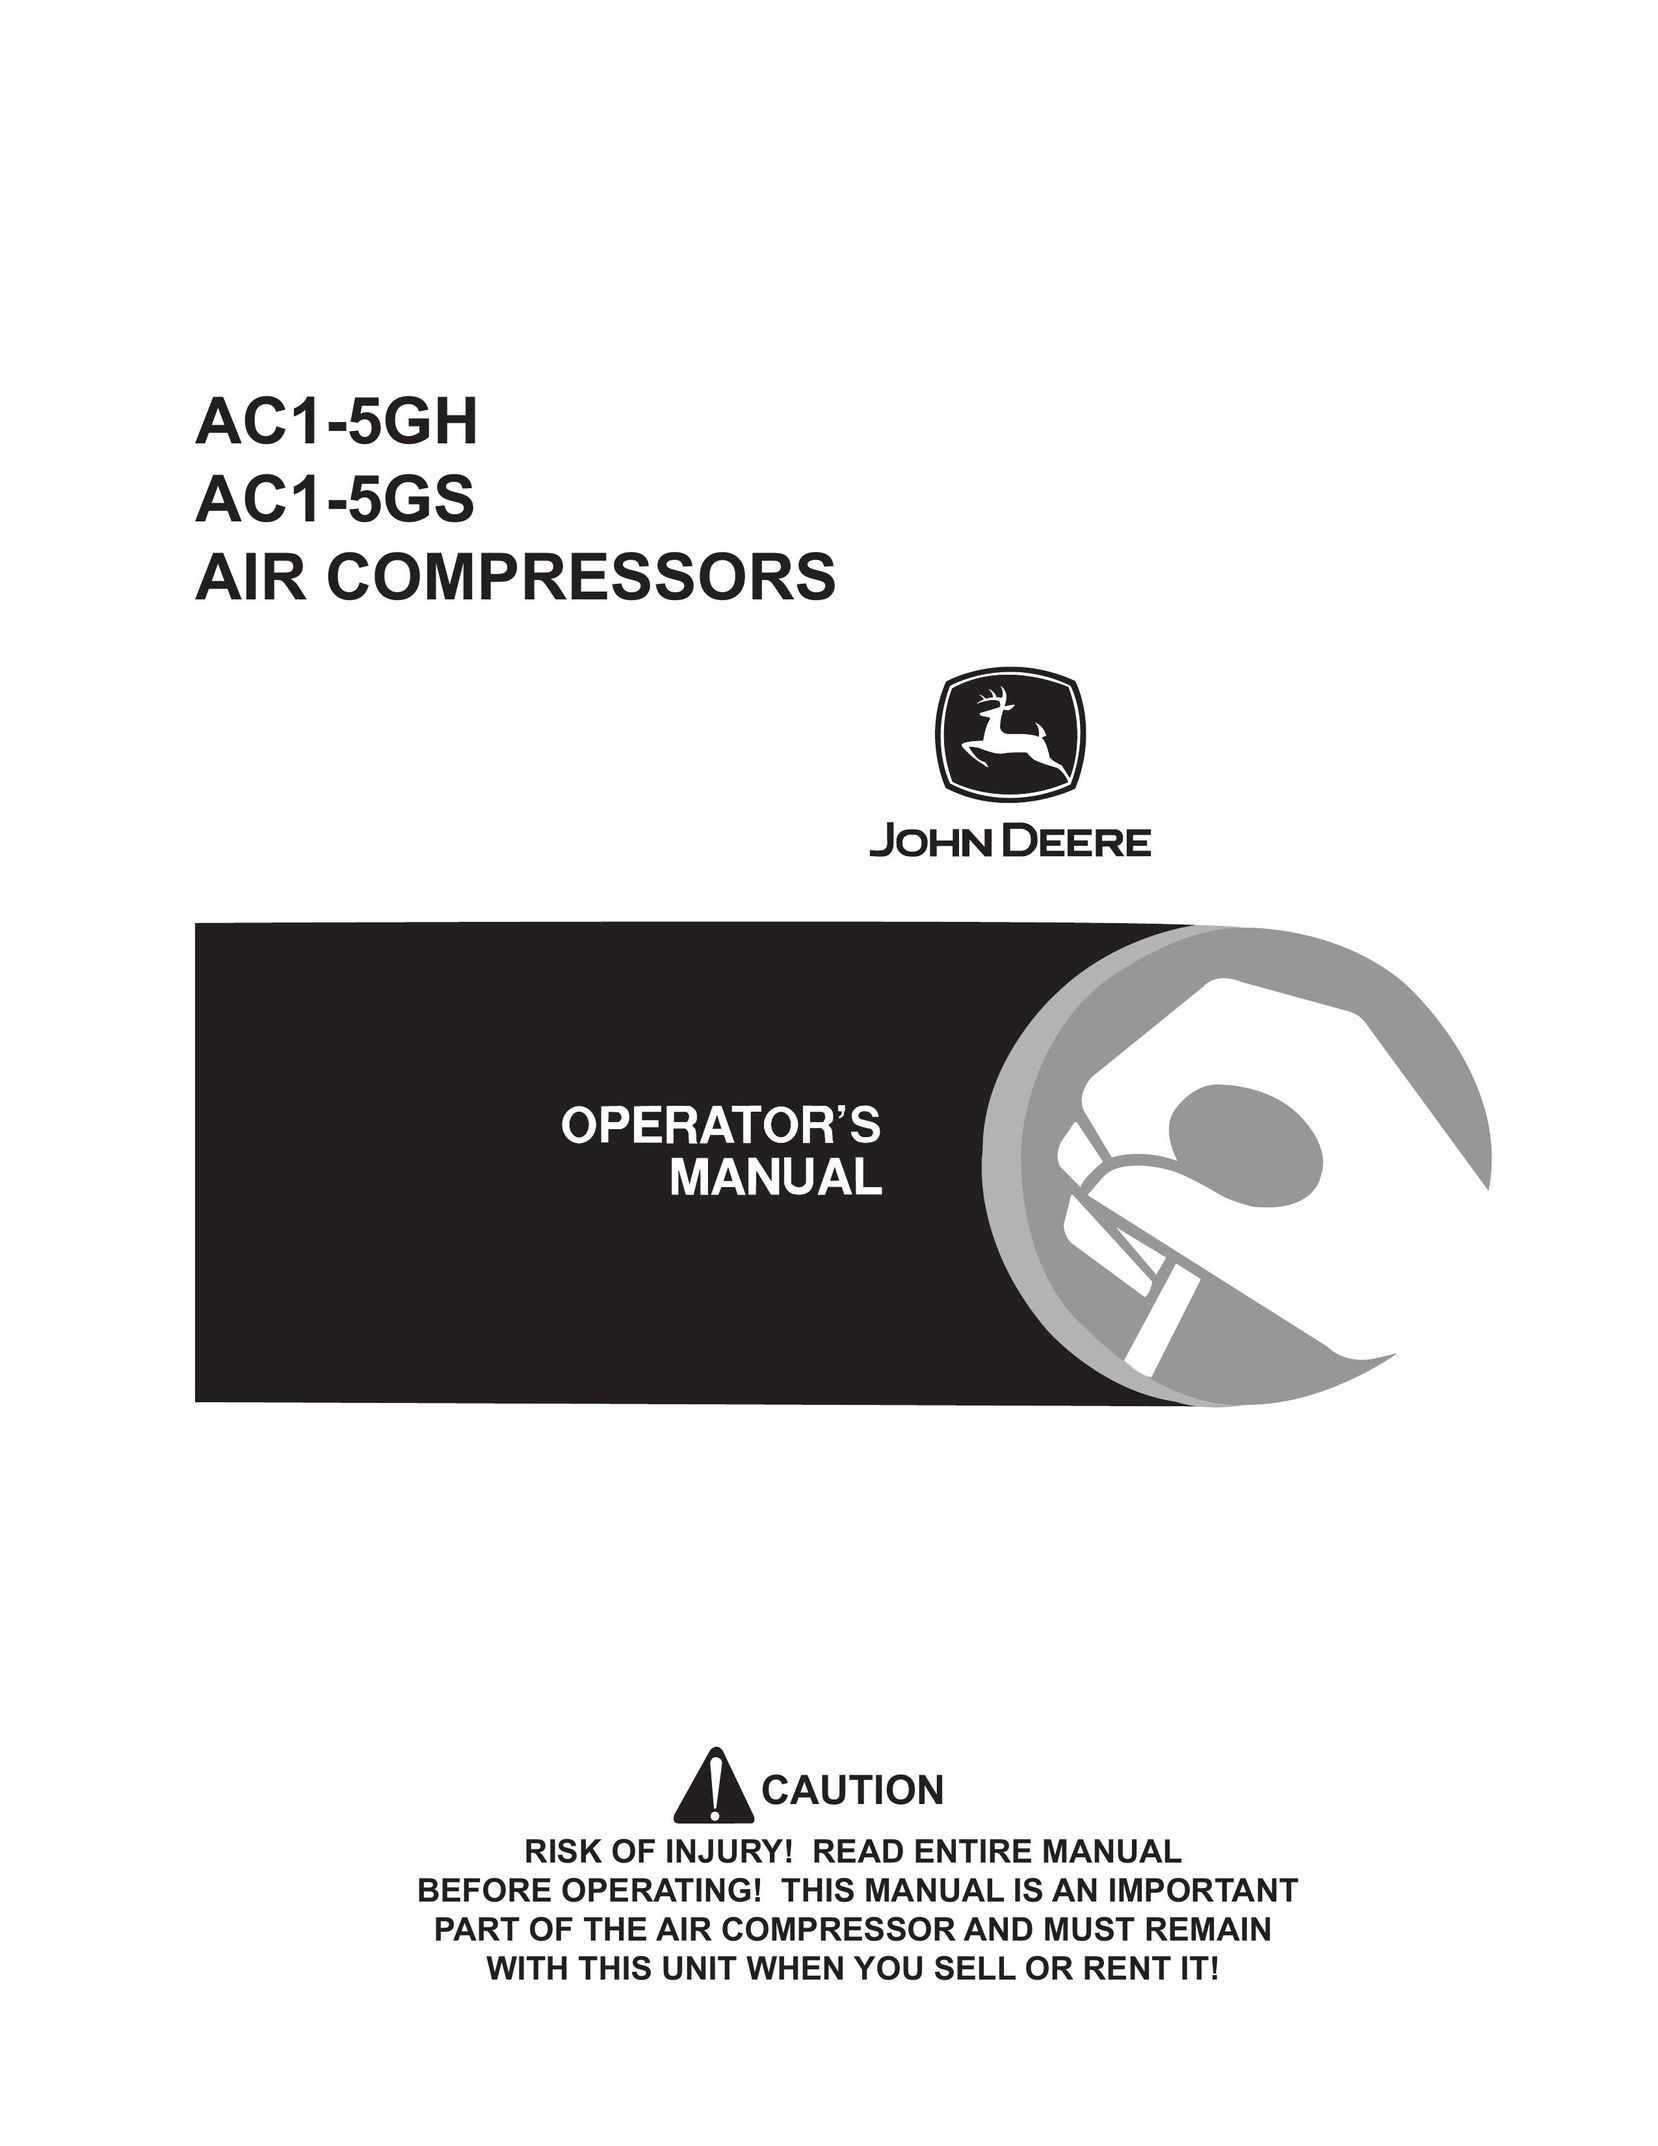 John Deere AC1-5GH Air Compressor User Manual